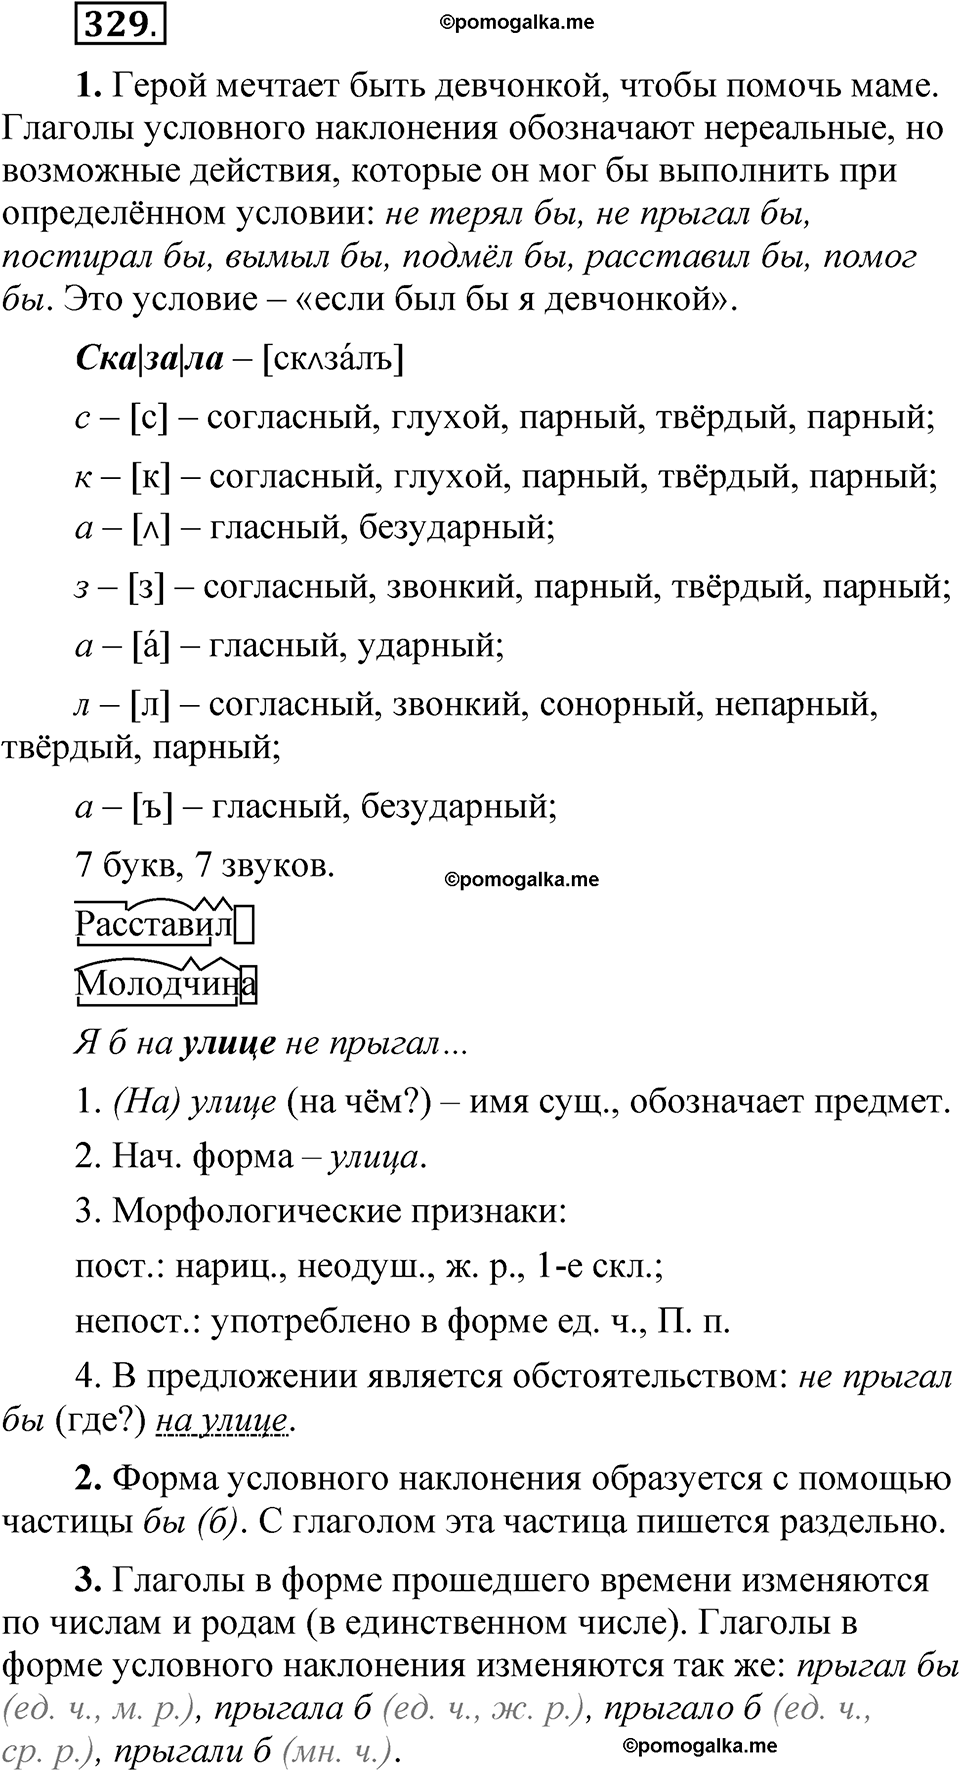 страница 232 упражнение 329 русский язык 5 класс Быстрова, Кибирева 2 часть 2021 год